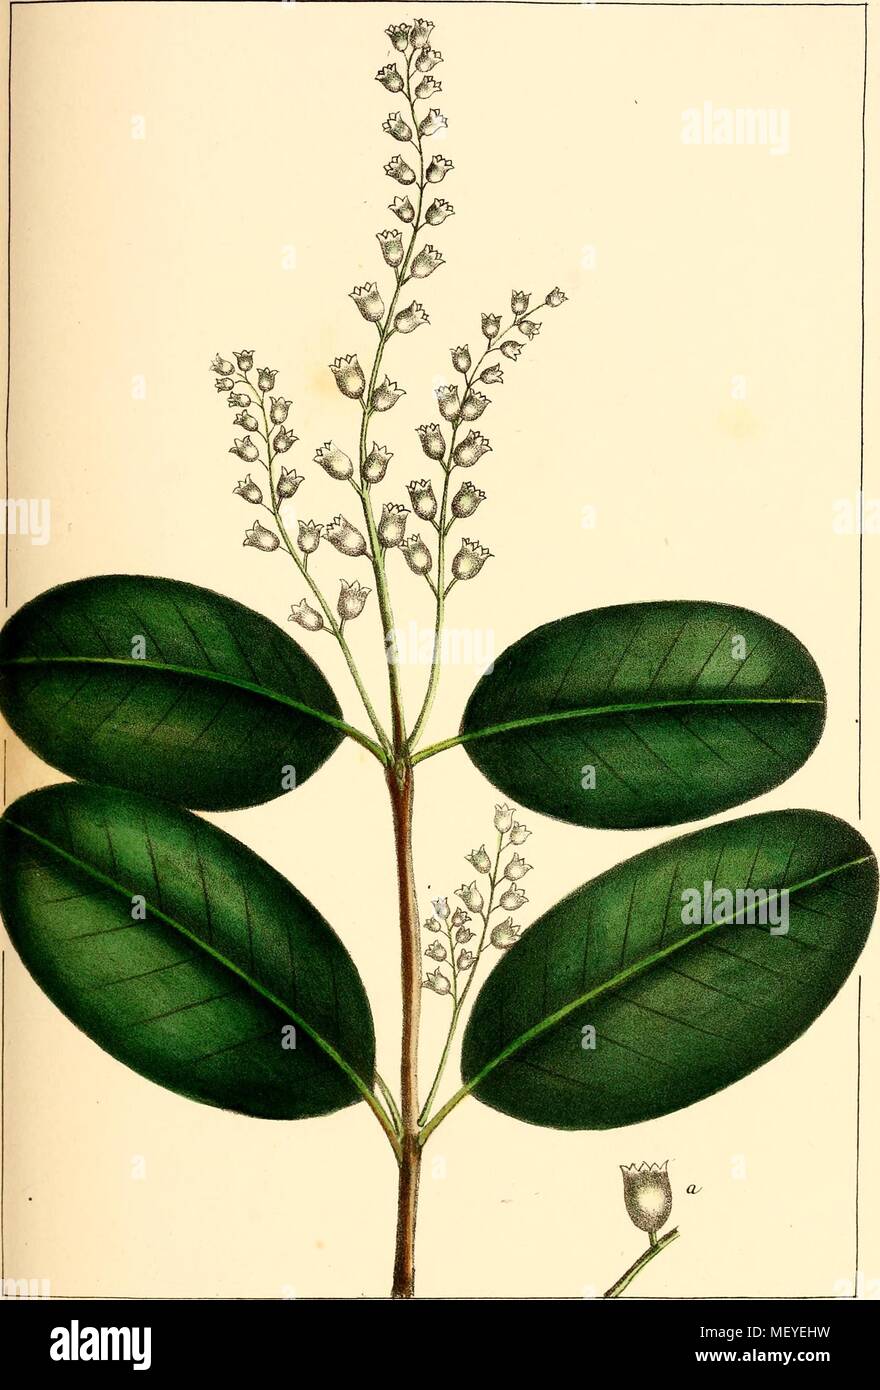 Illustration botanique de la Mangrove blanche (Laguncularia racemosa) plante et ses fleurs, 1865. Avec la permission de Internet Archive. () Banque D'Images